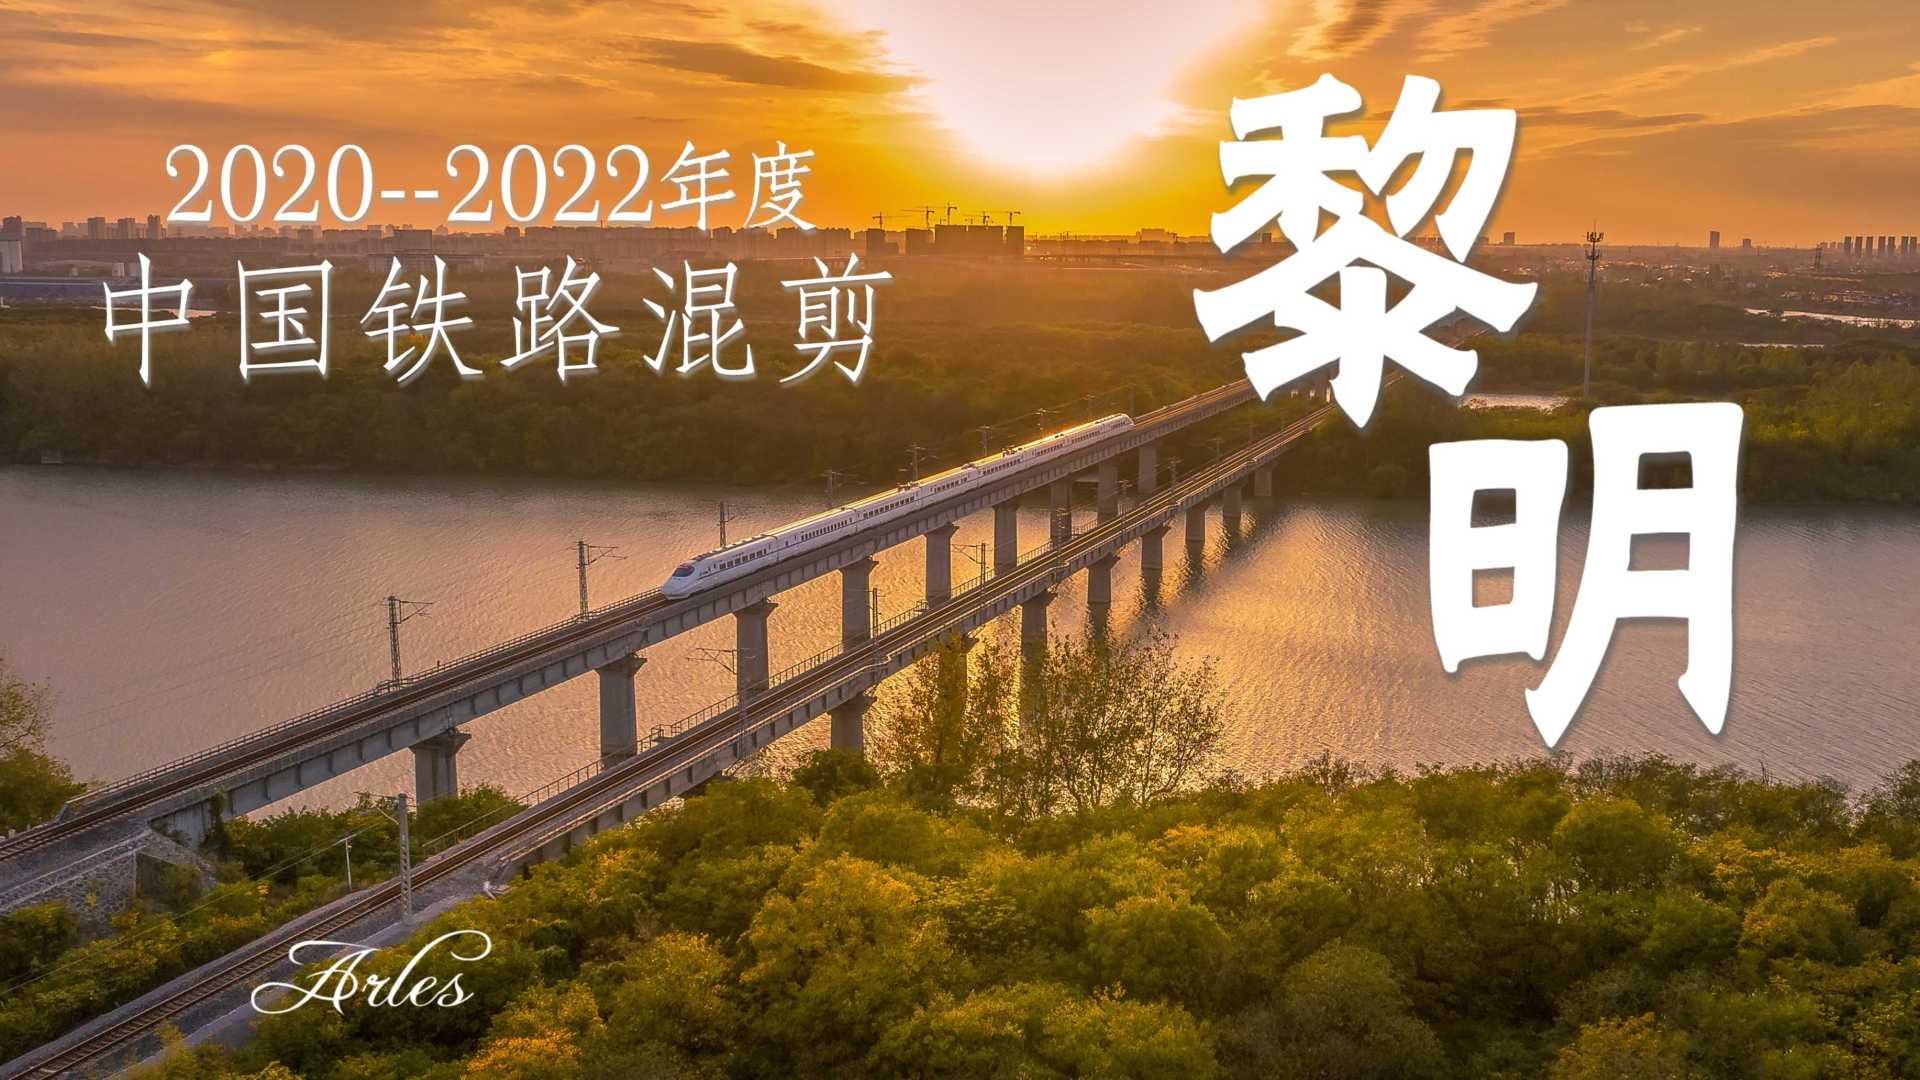 2020-2022年度中国铁路视频混剪《日升月落、总有黎明》